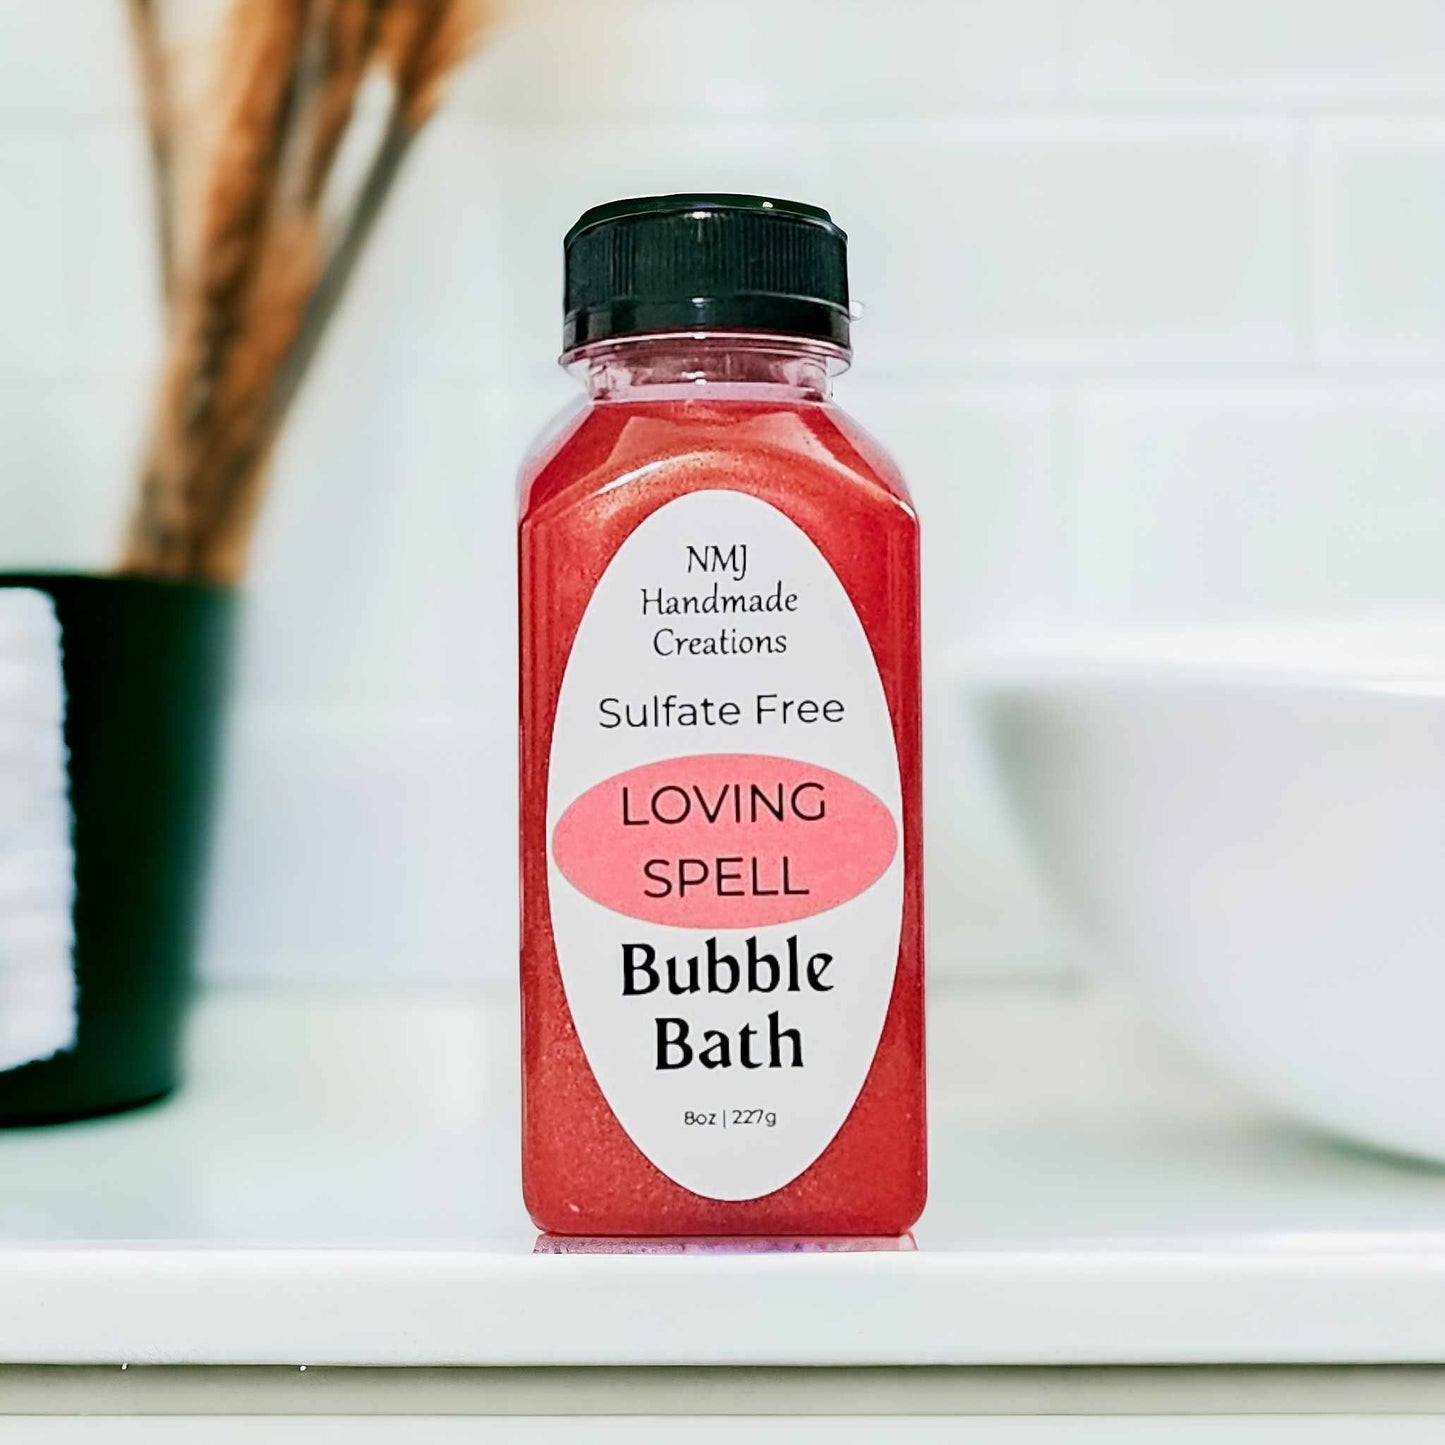 Loving Spell Bubble Bath - Sulfate Free Formula